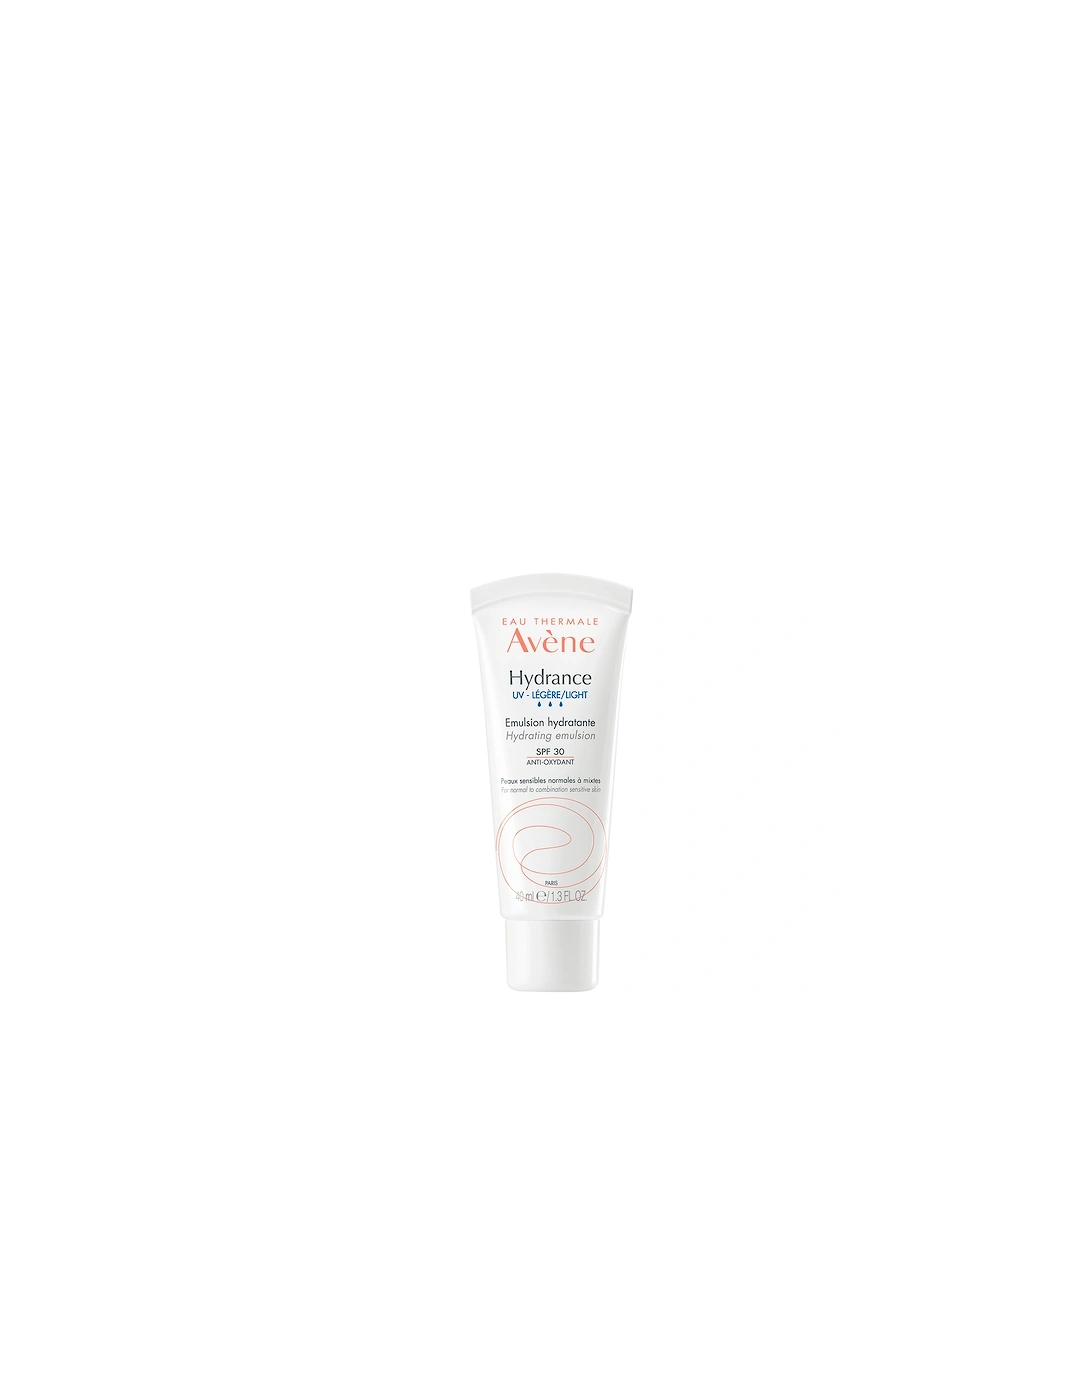 Avène Hydrance Light-UV Hydrating Emulsion SPF 30 Moisturiser for Dehydrated Skin 40ml - Avene, 2 of 1